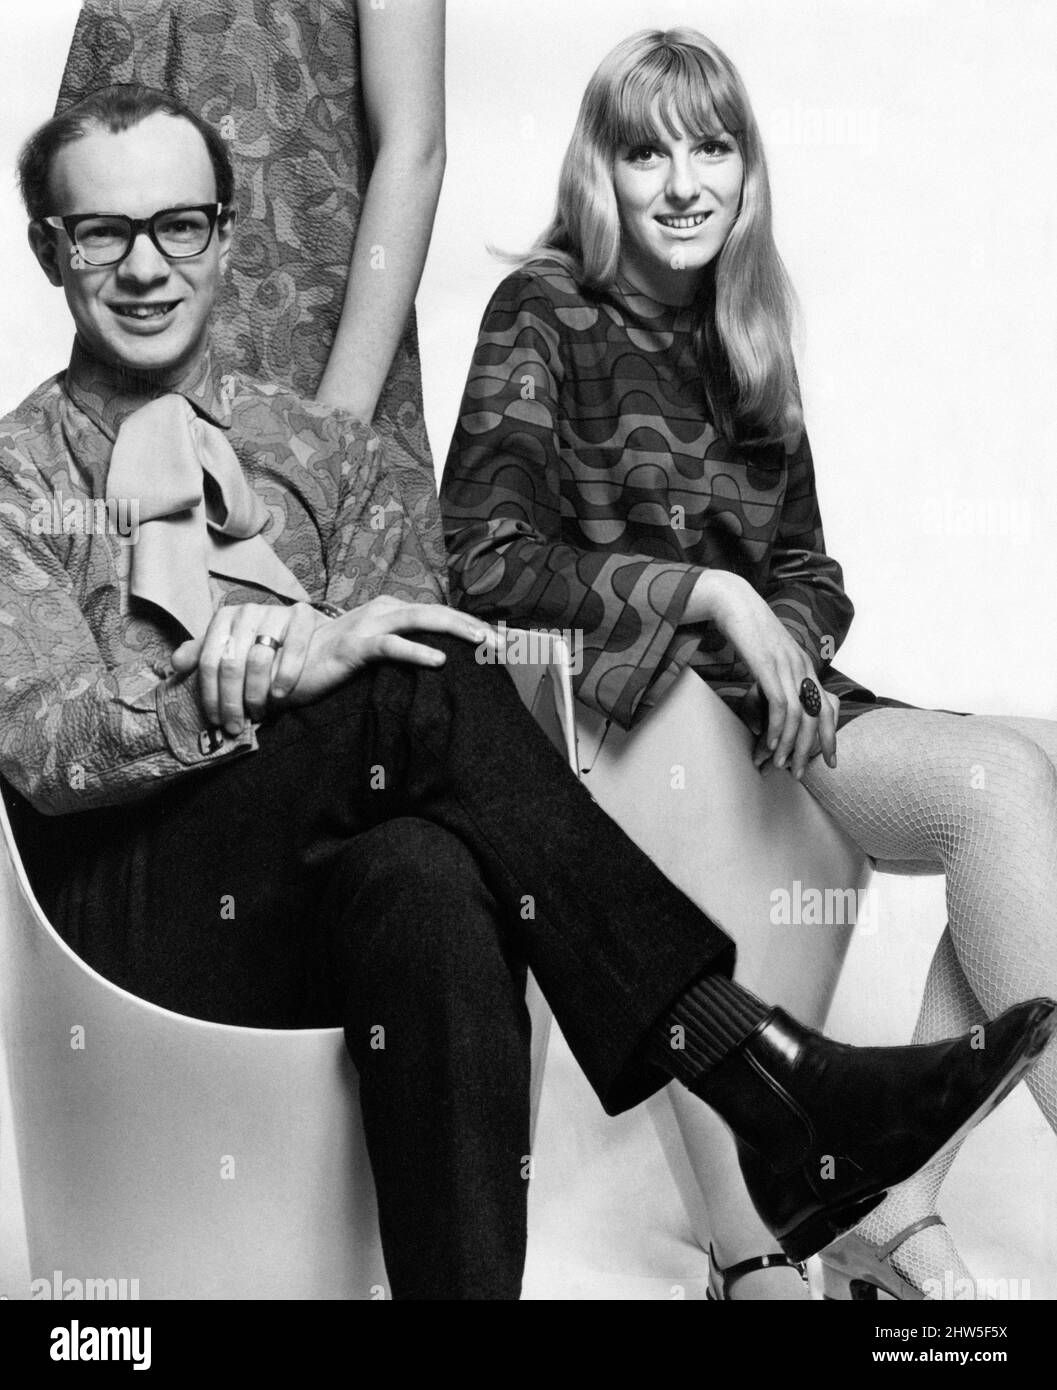 David und Marion Donaldson, Modedesigner, Ehemann und Ehefrau, im Bild, Glasgow, Schottland, um 1967. Stockfoto